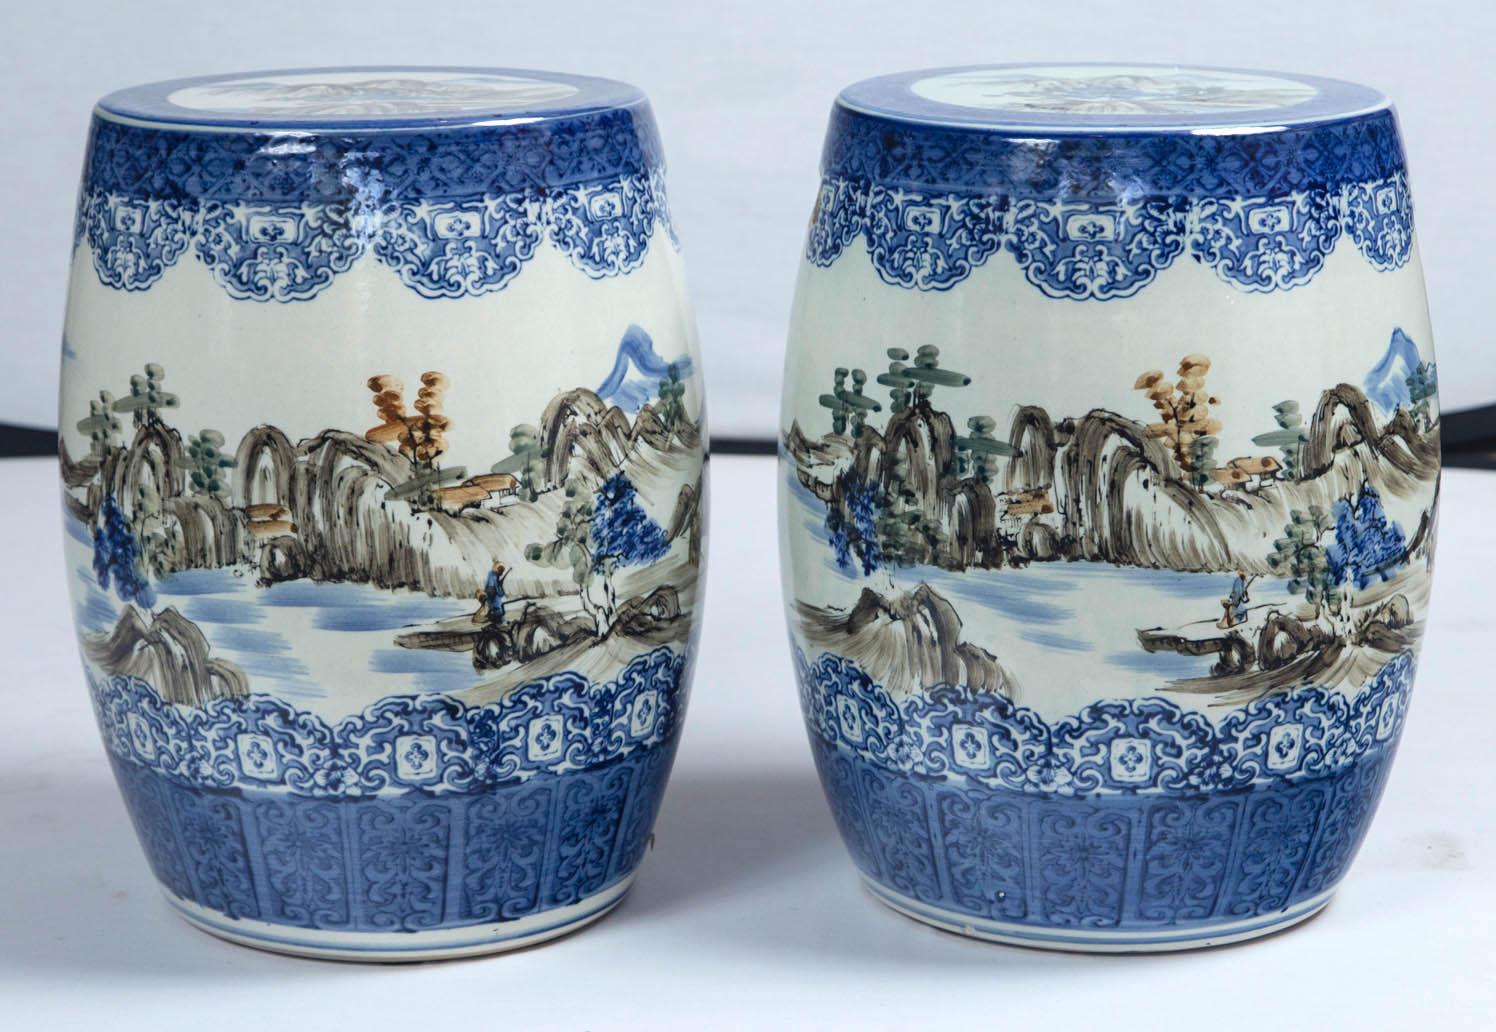 Paar japanische Gartenhocker aus Keramik, frühes 20. Jahrhundert. Kobaltblauer Glasurrand oben und unten. Ländliche Gesamtlandschaft mit Bergen und See. Ein Design, das an japanische Aquarellmalerei erinnert.